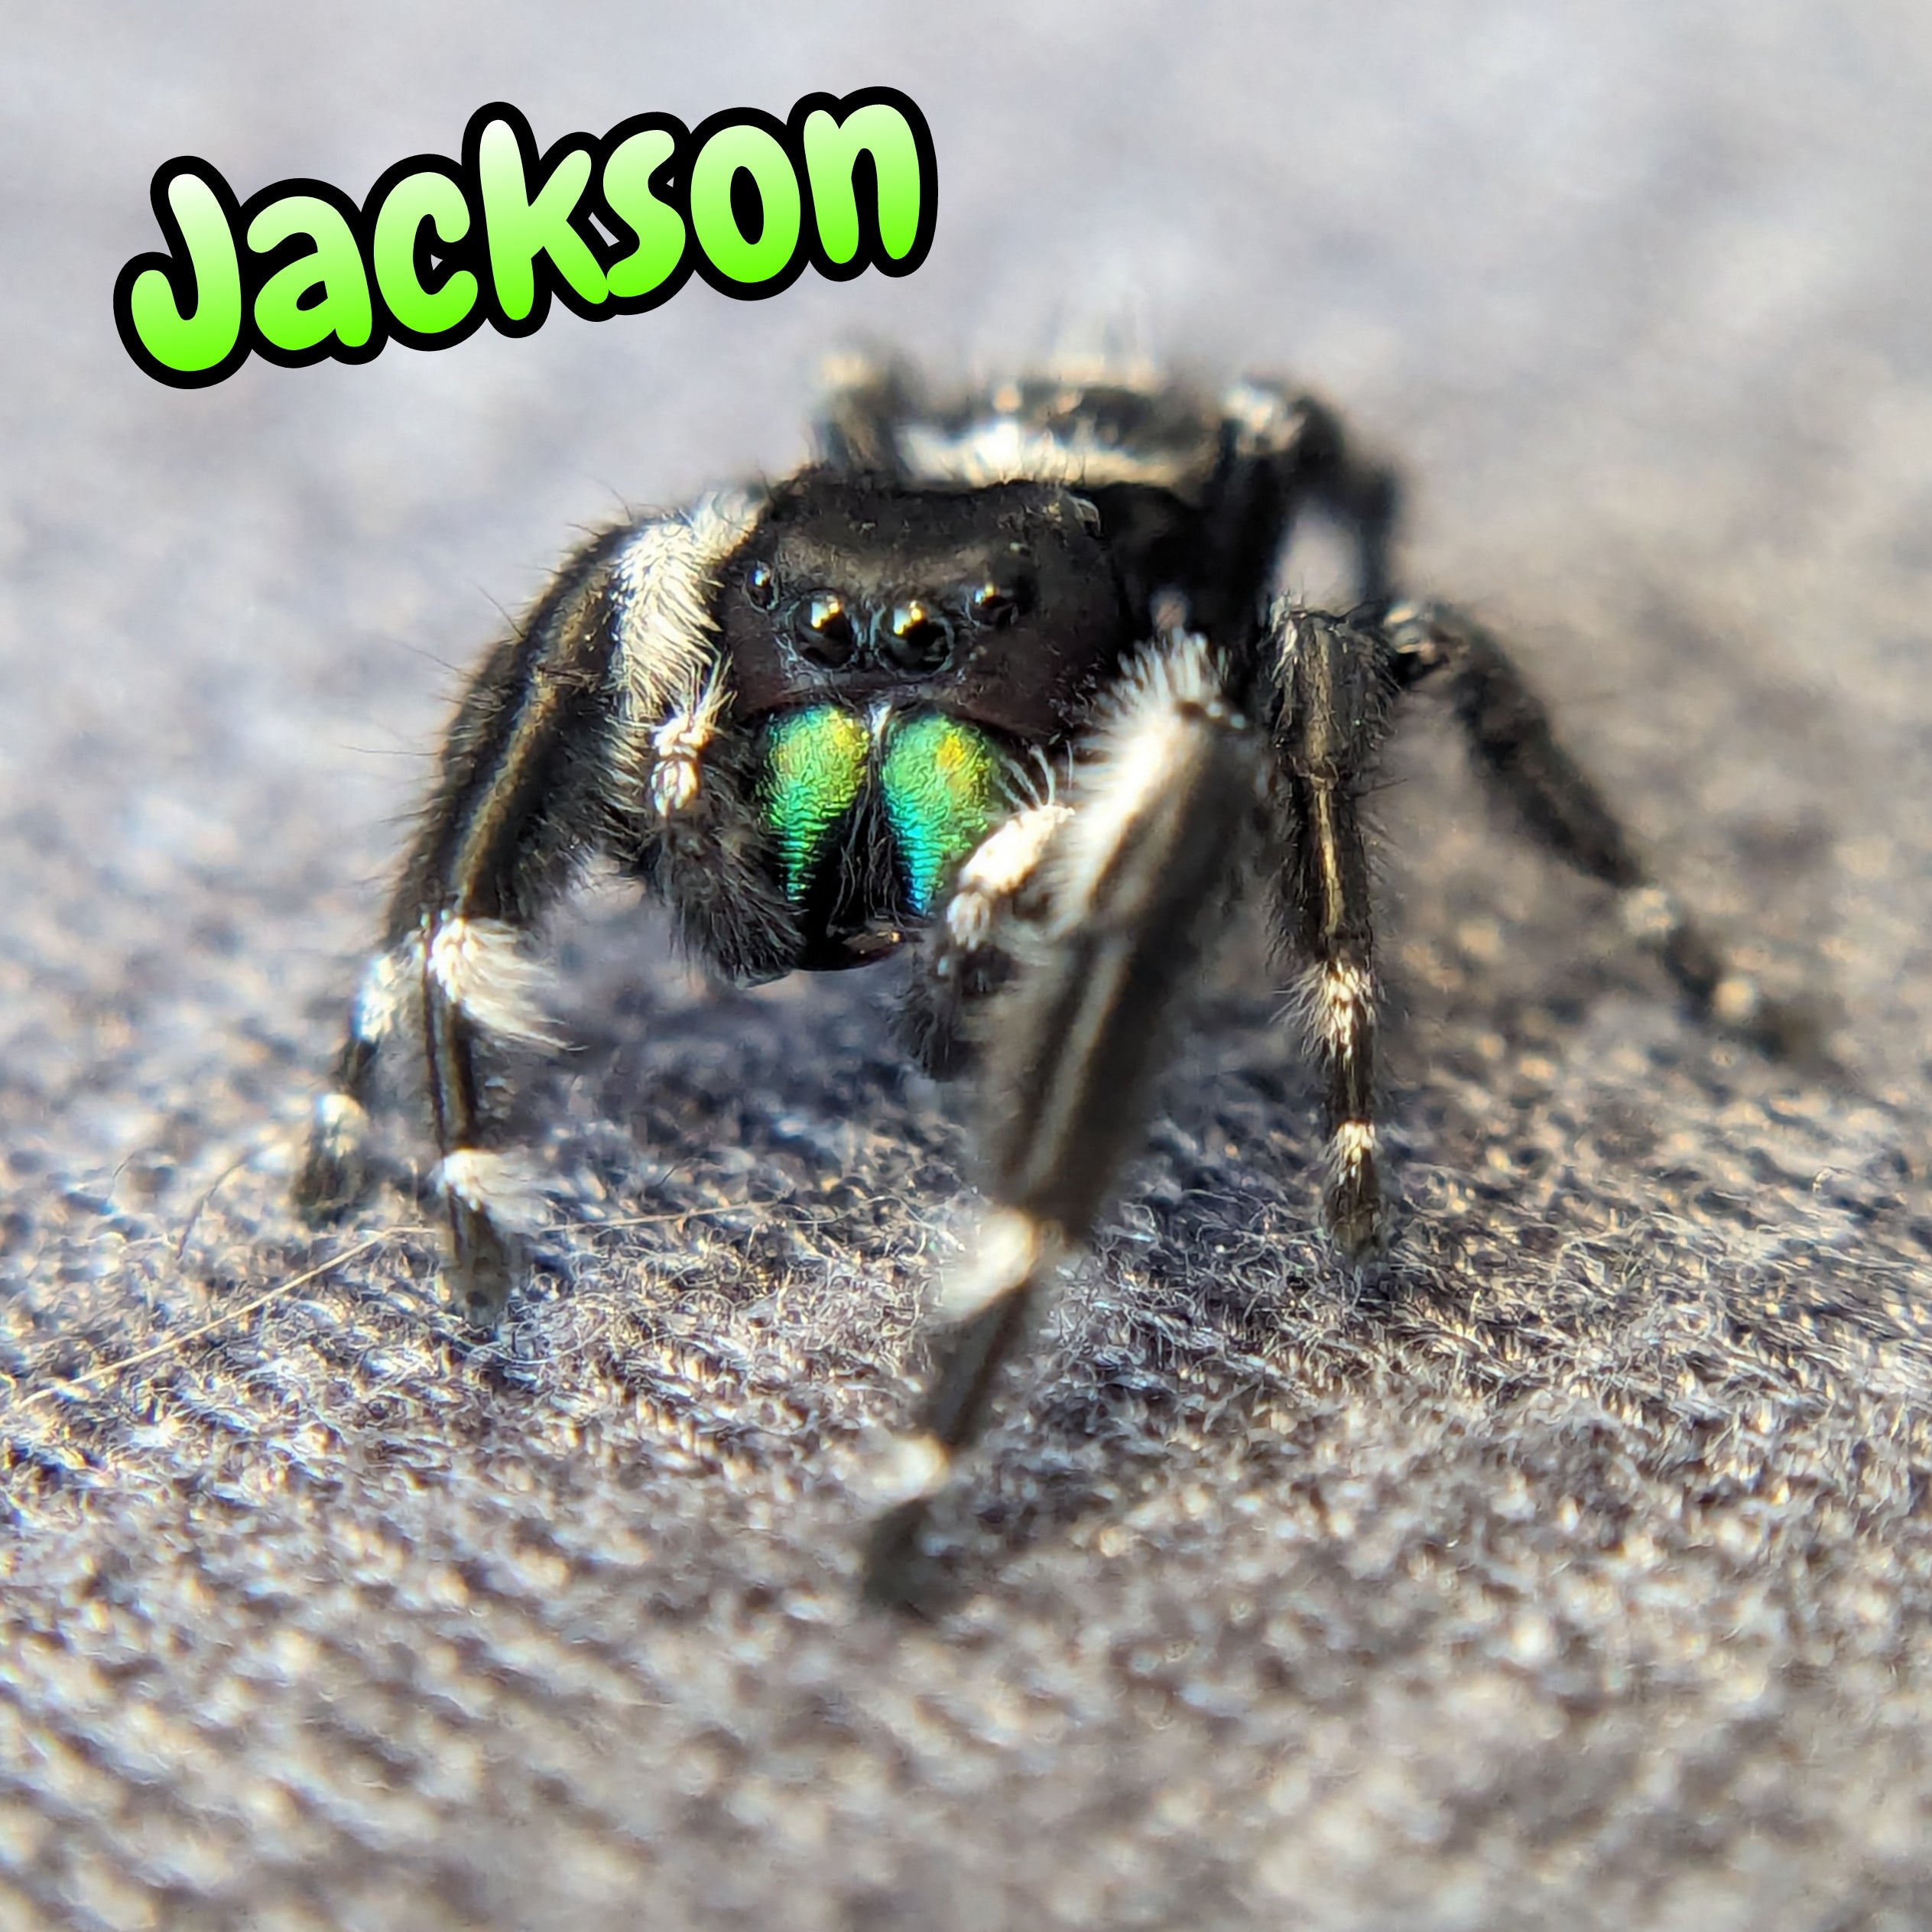 Audax Jumping Spider "Jackson"